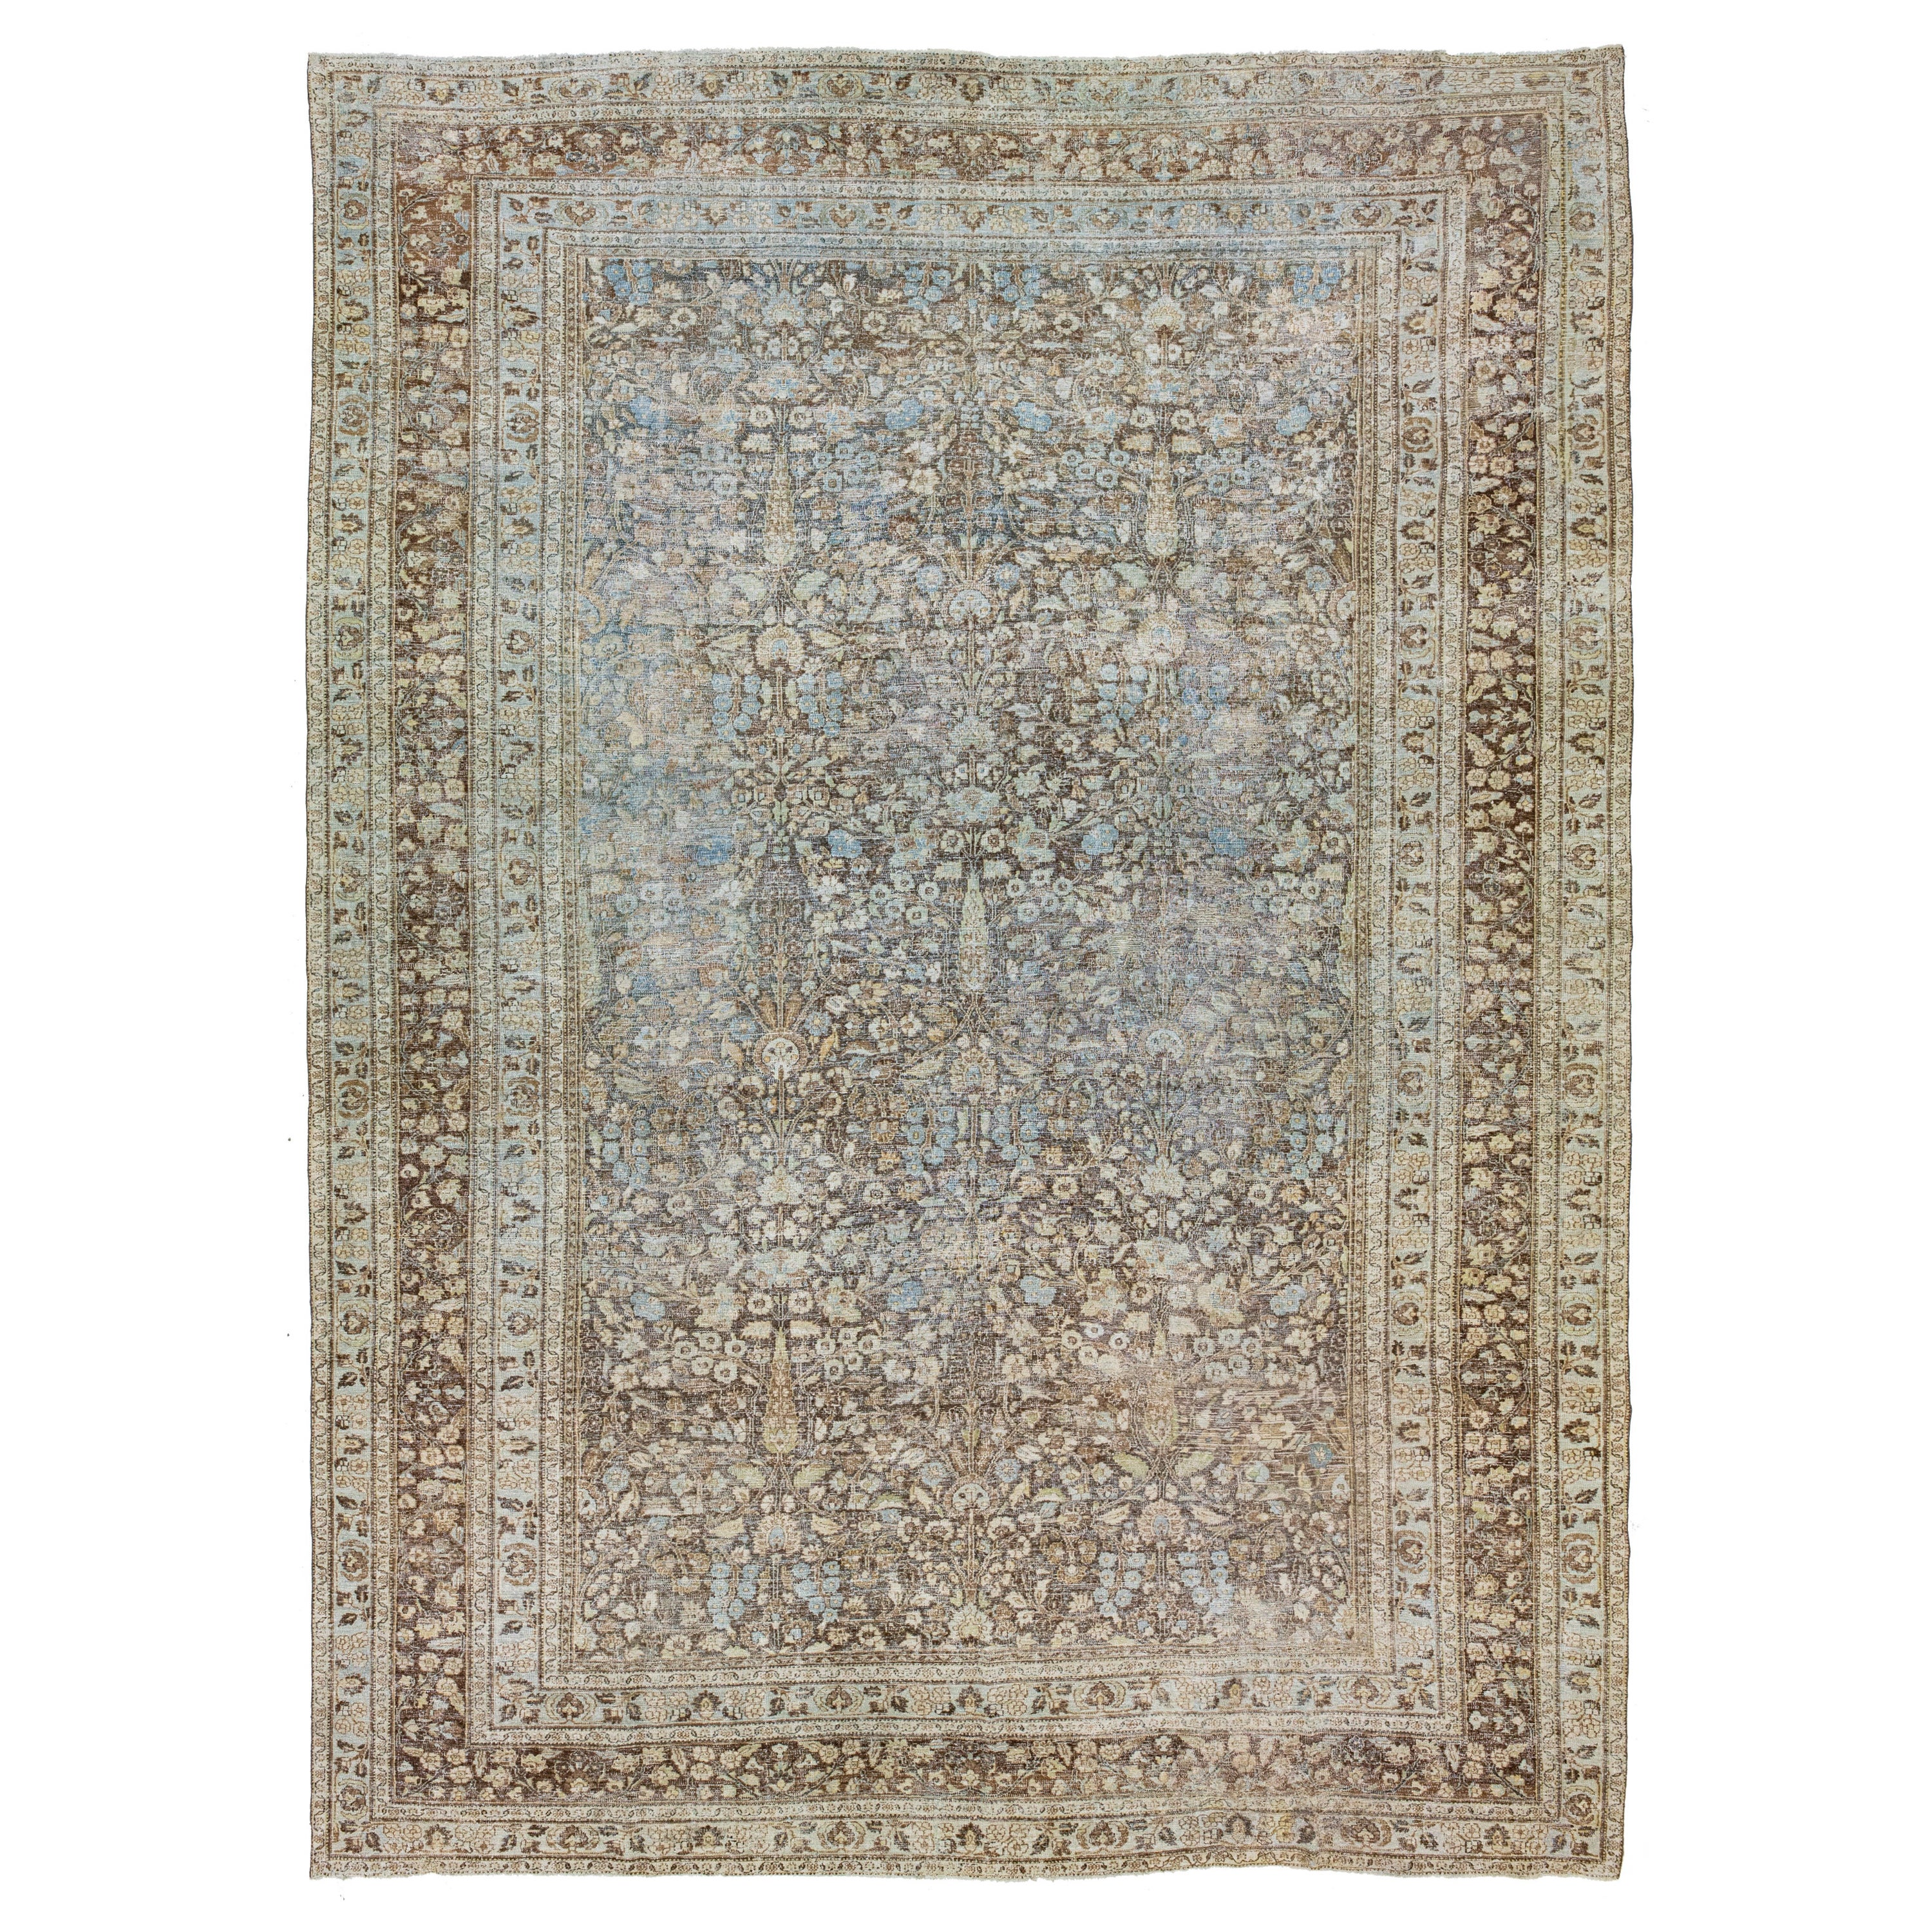 Grand tapis persan en laine Tabriz des années 1900, à motifs floraux, de couleur Brown